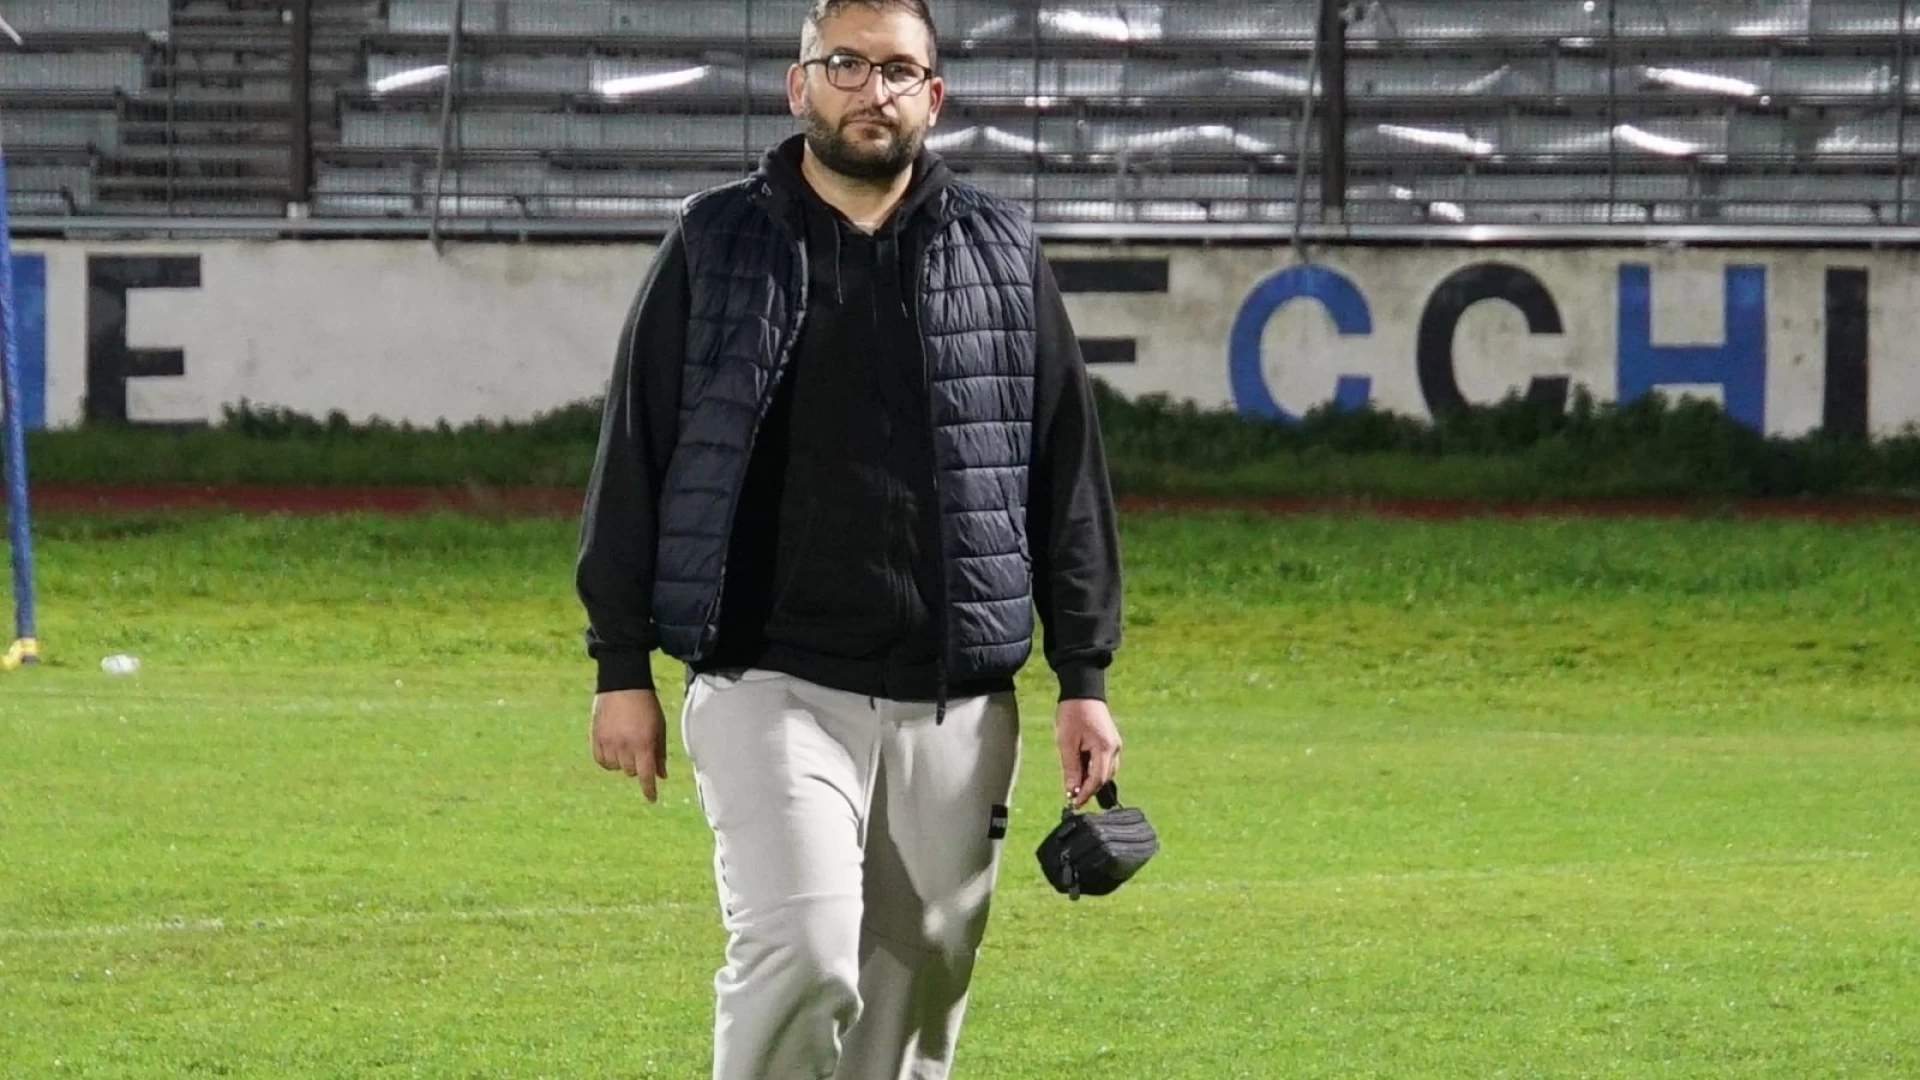 Eccellenza: Dario Di Giacomo e’ il nuovo direttore sportivo del Real Guglionesi. Il Ds già al lavoro per costruire l’organico della prossima stagione.